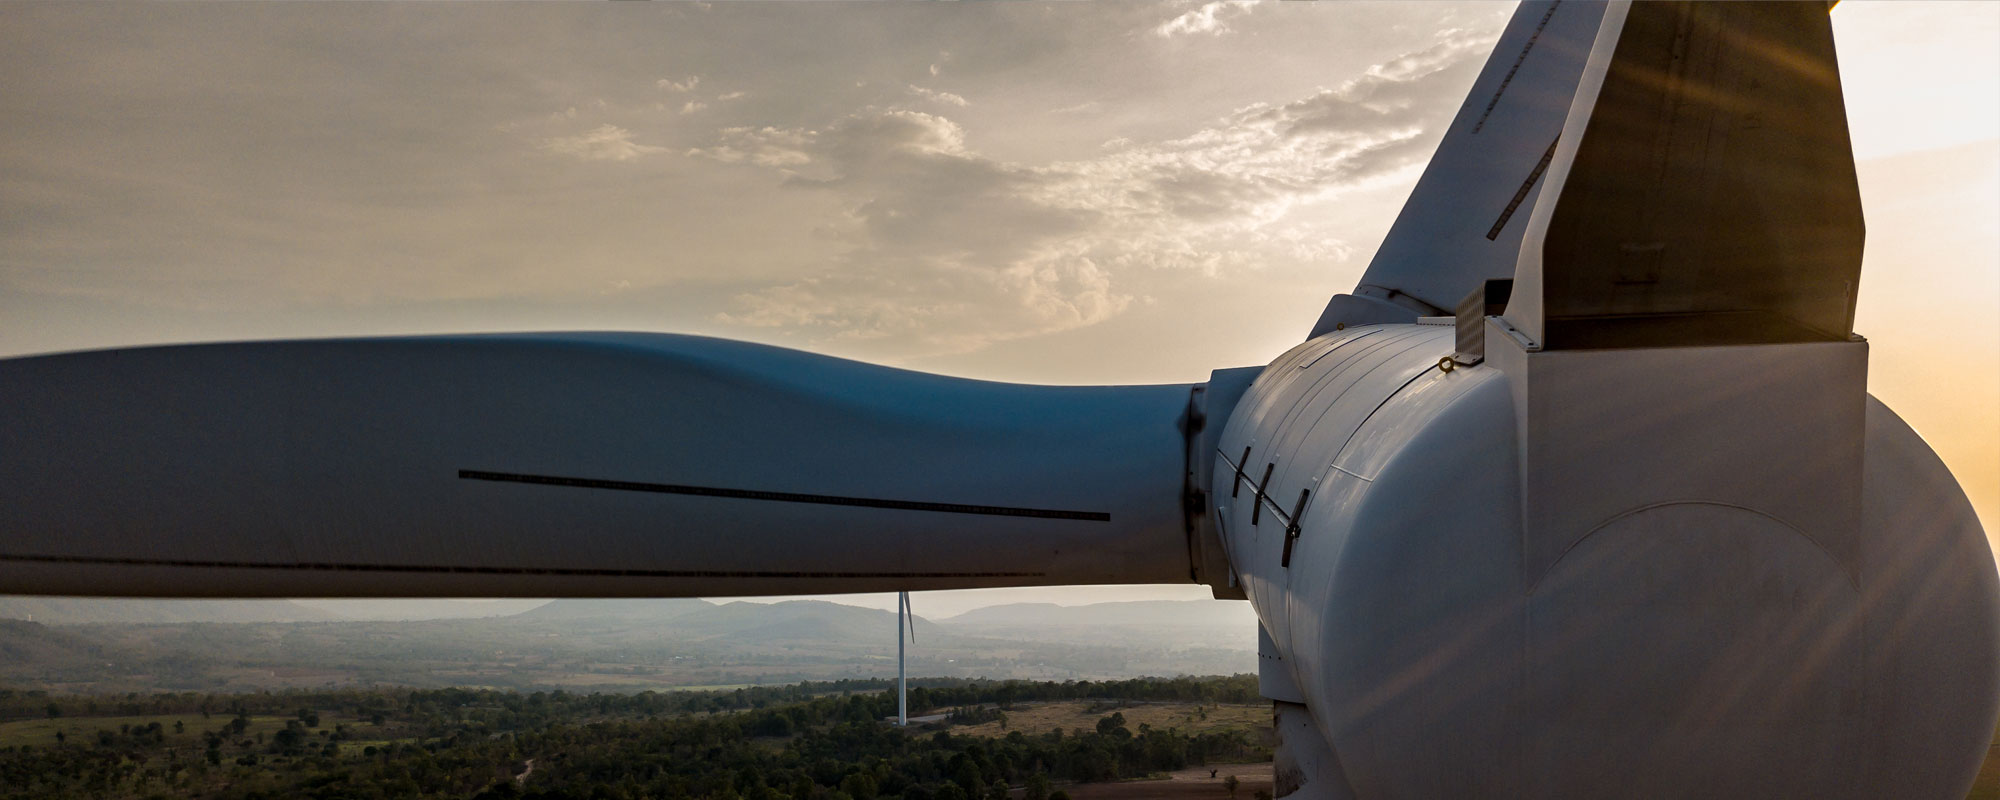 Mai multă putere, mai eficient: Cum transformă TRB-urile industria eoliană